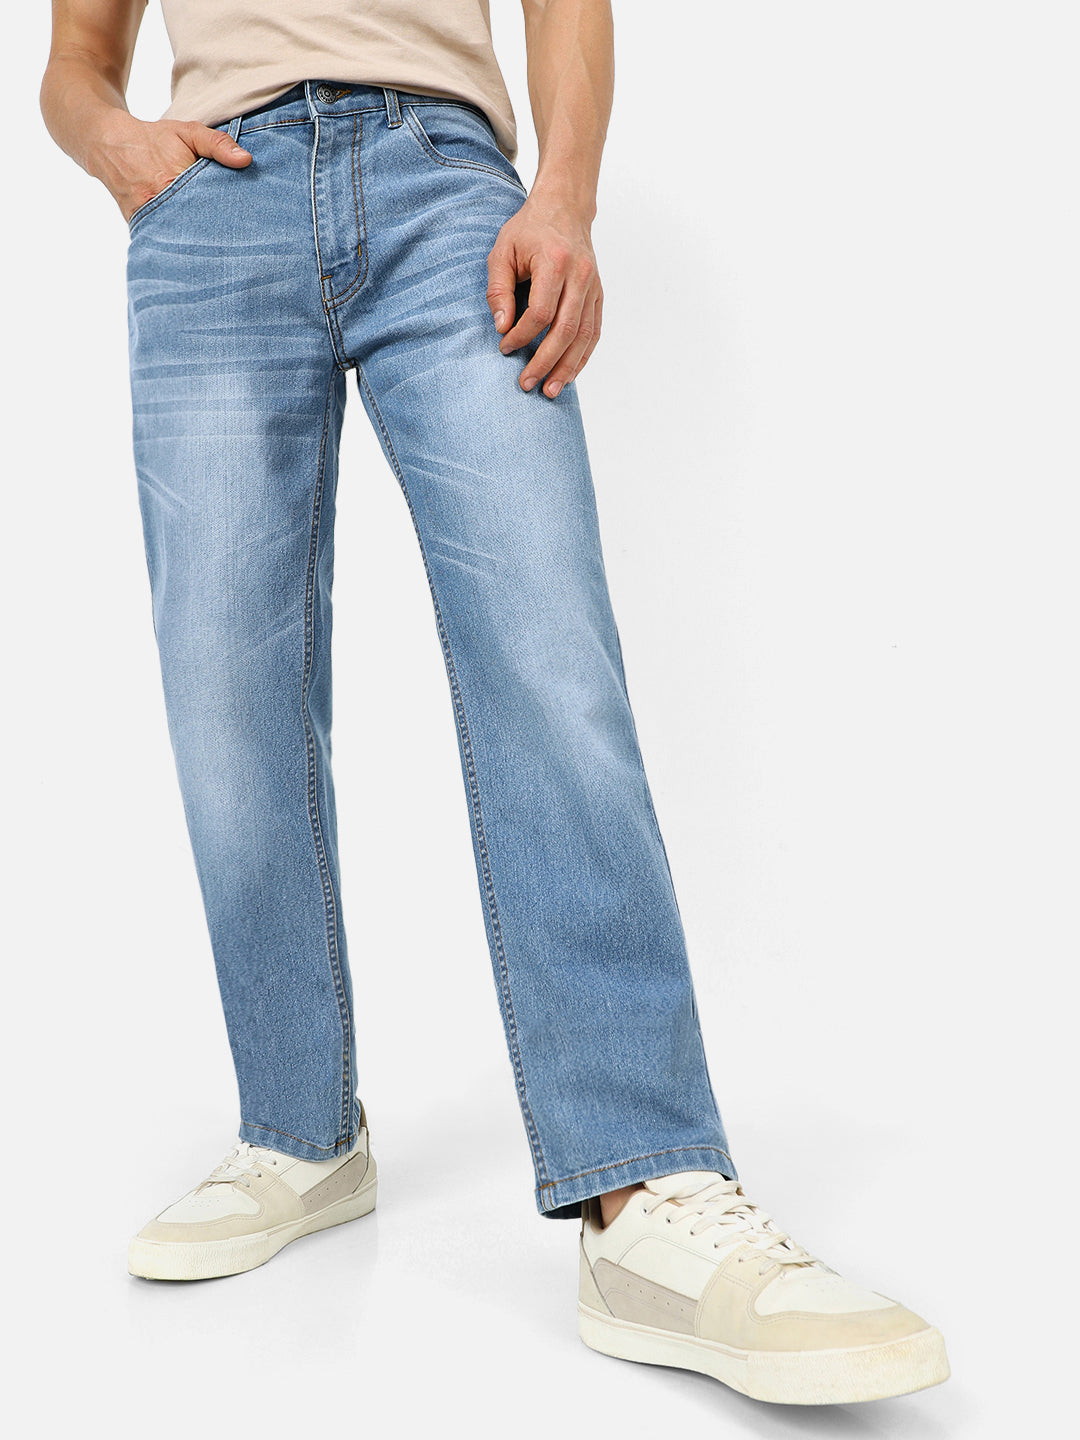 Men's Light Blue Regular Fit Washed Jeans Stretchable